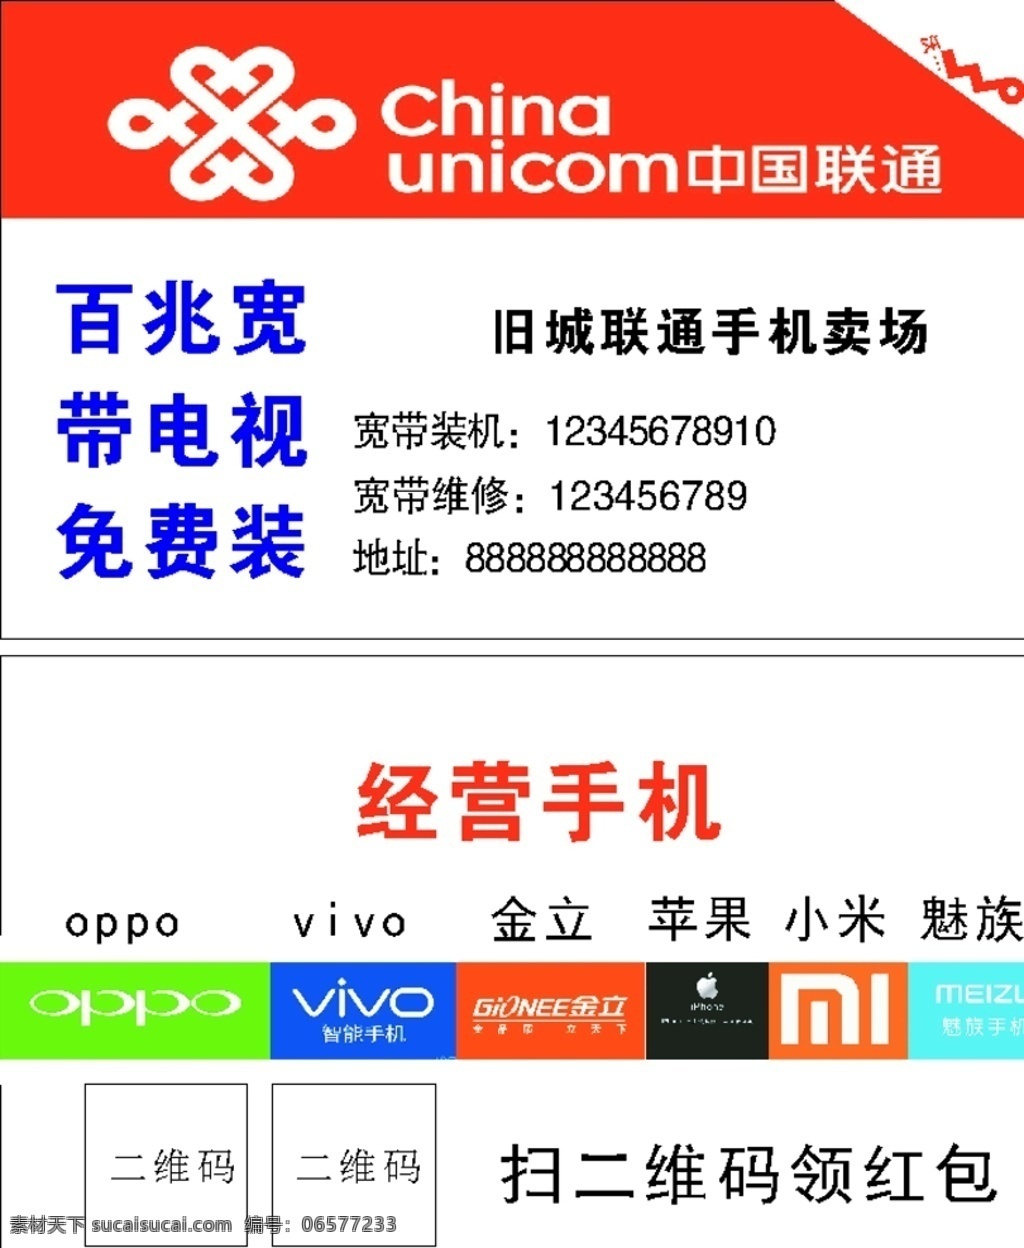 中国联通 名片 营业厅 手机 宽带 安装 名片卡片